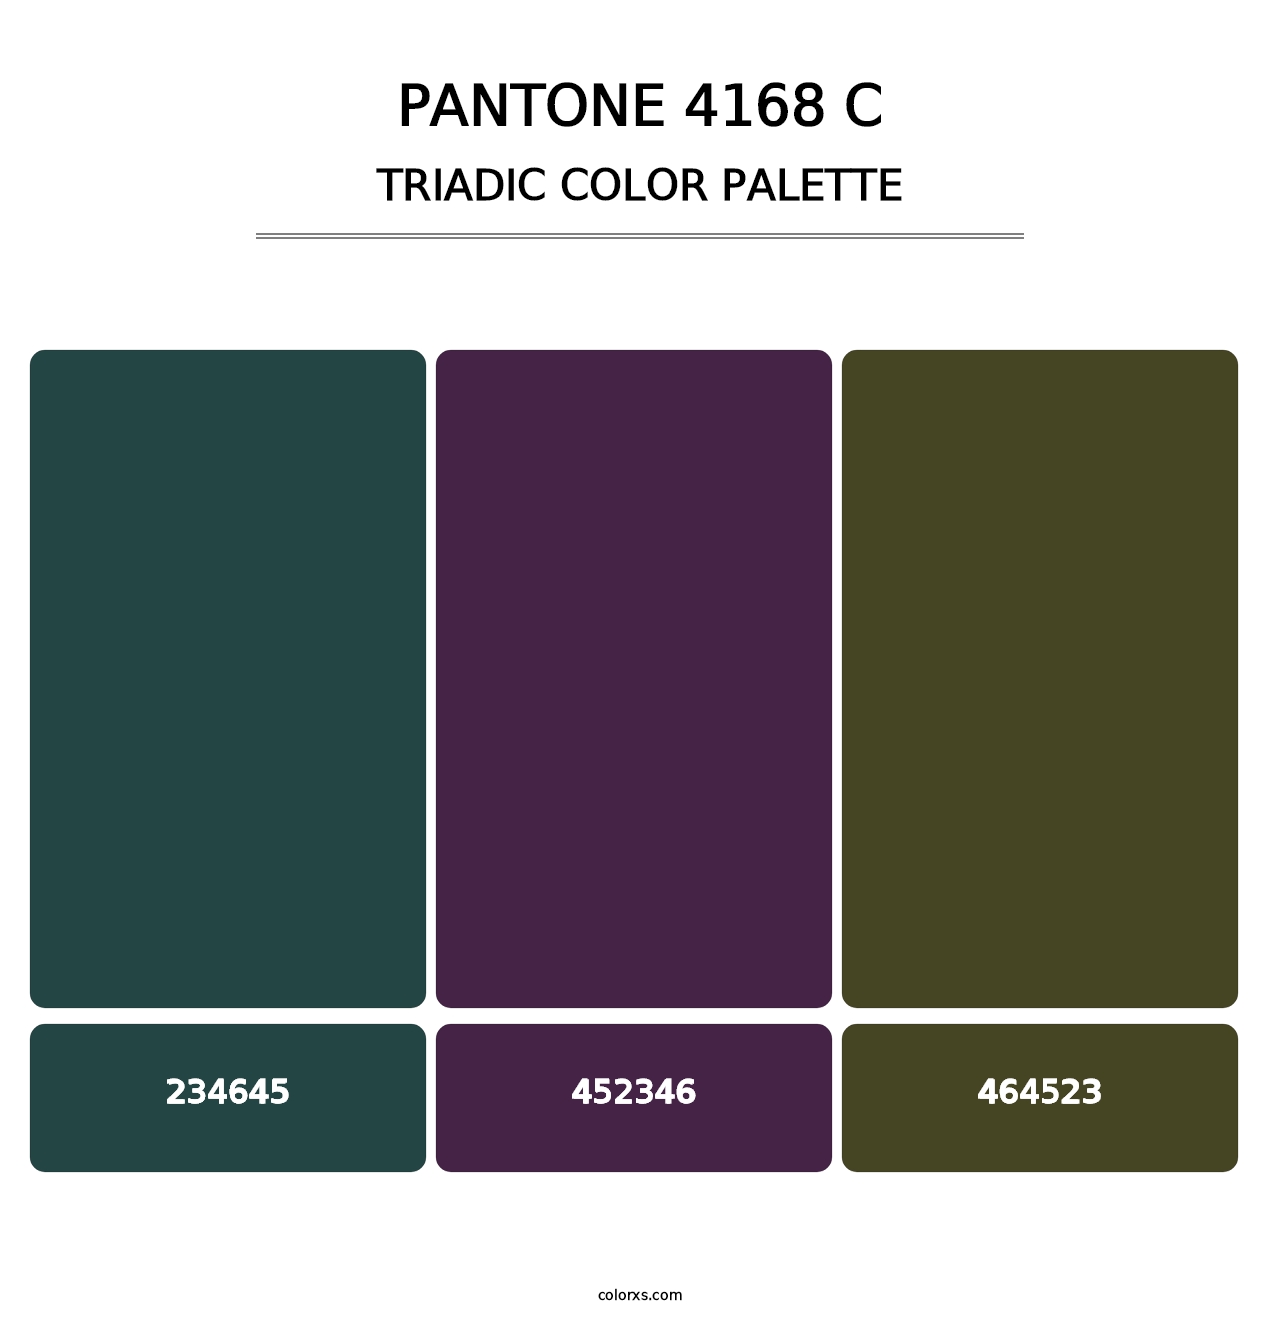 PANTONE 4168 C - Triadic Color Palette